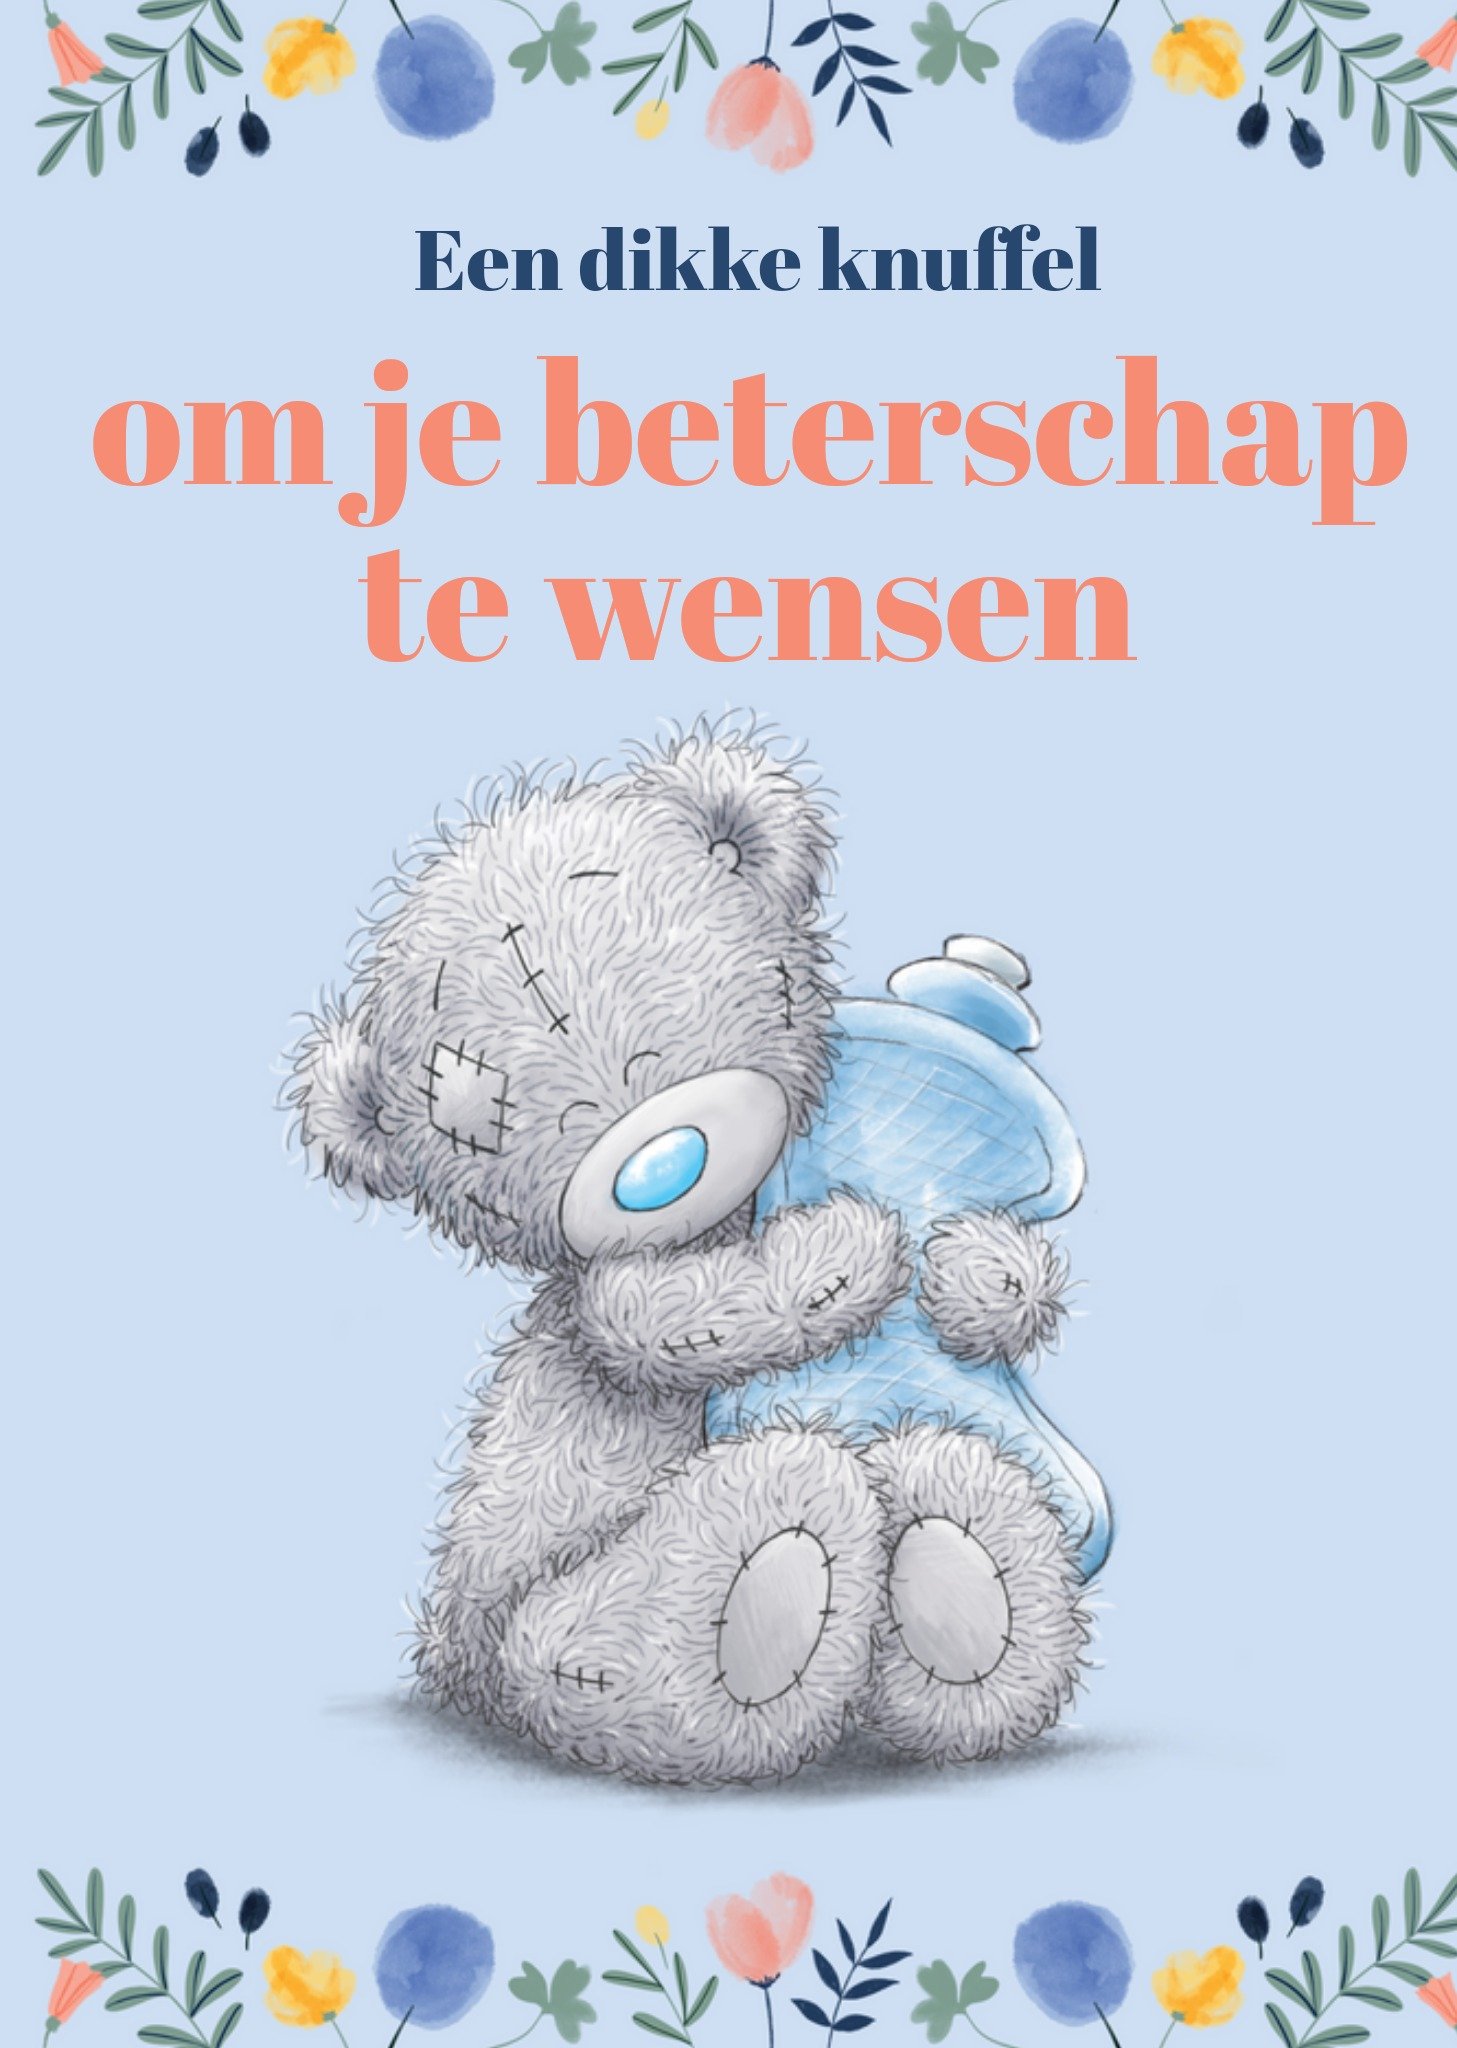 Me to You - Beterschapskaart - Tatty Teddy - Dikke knuffel